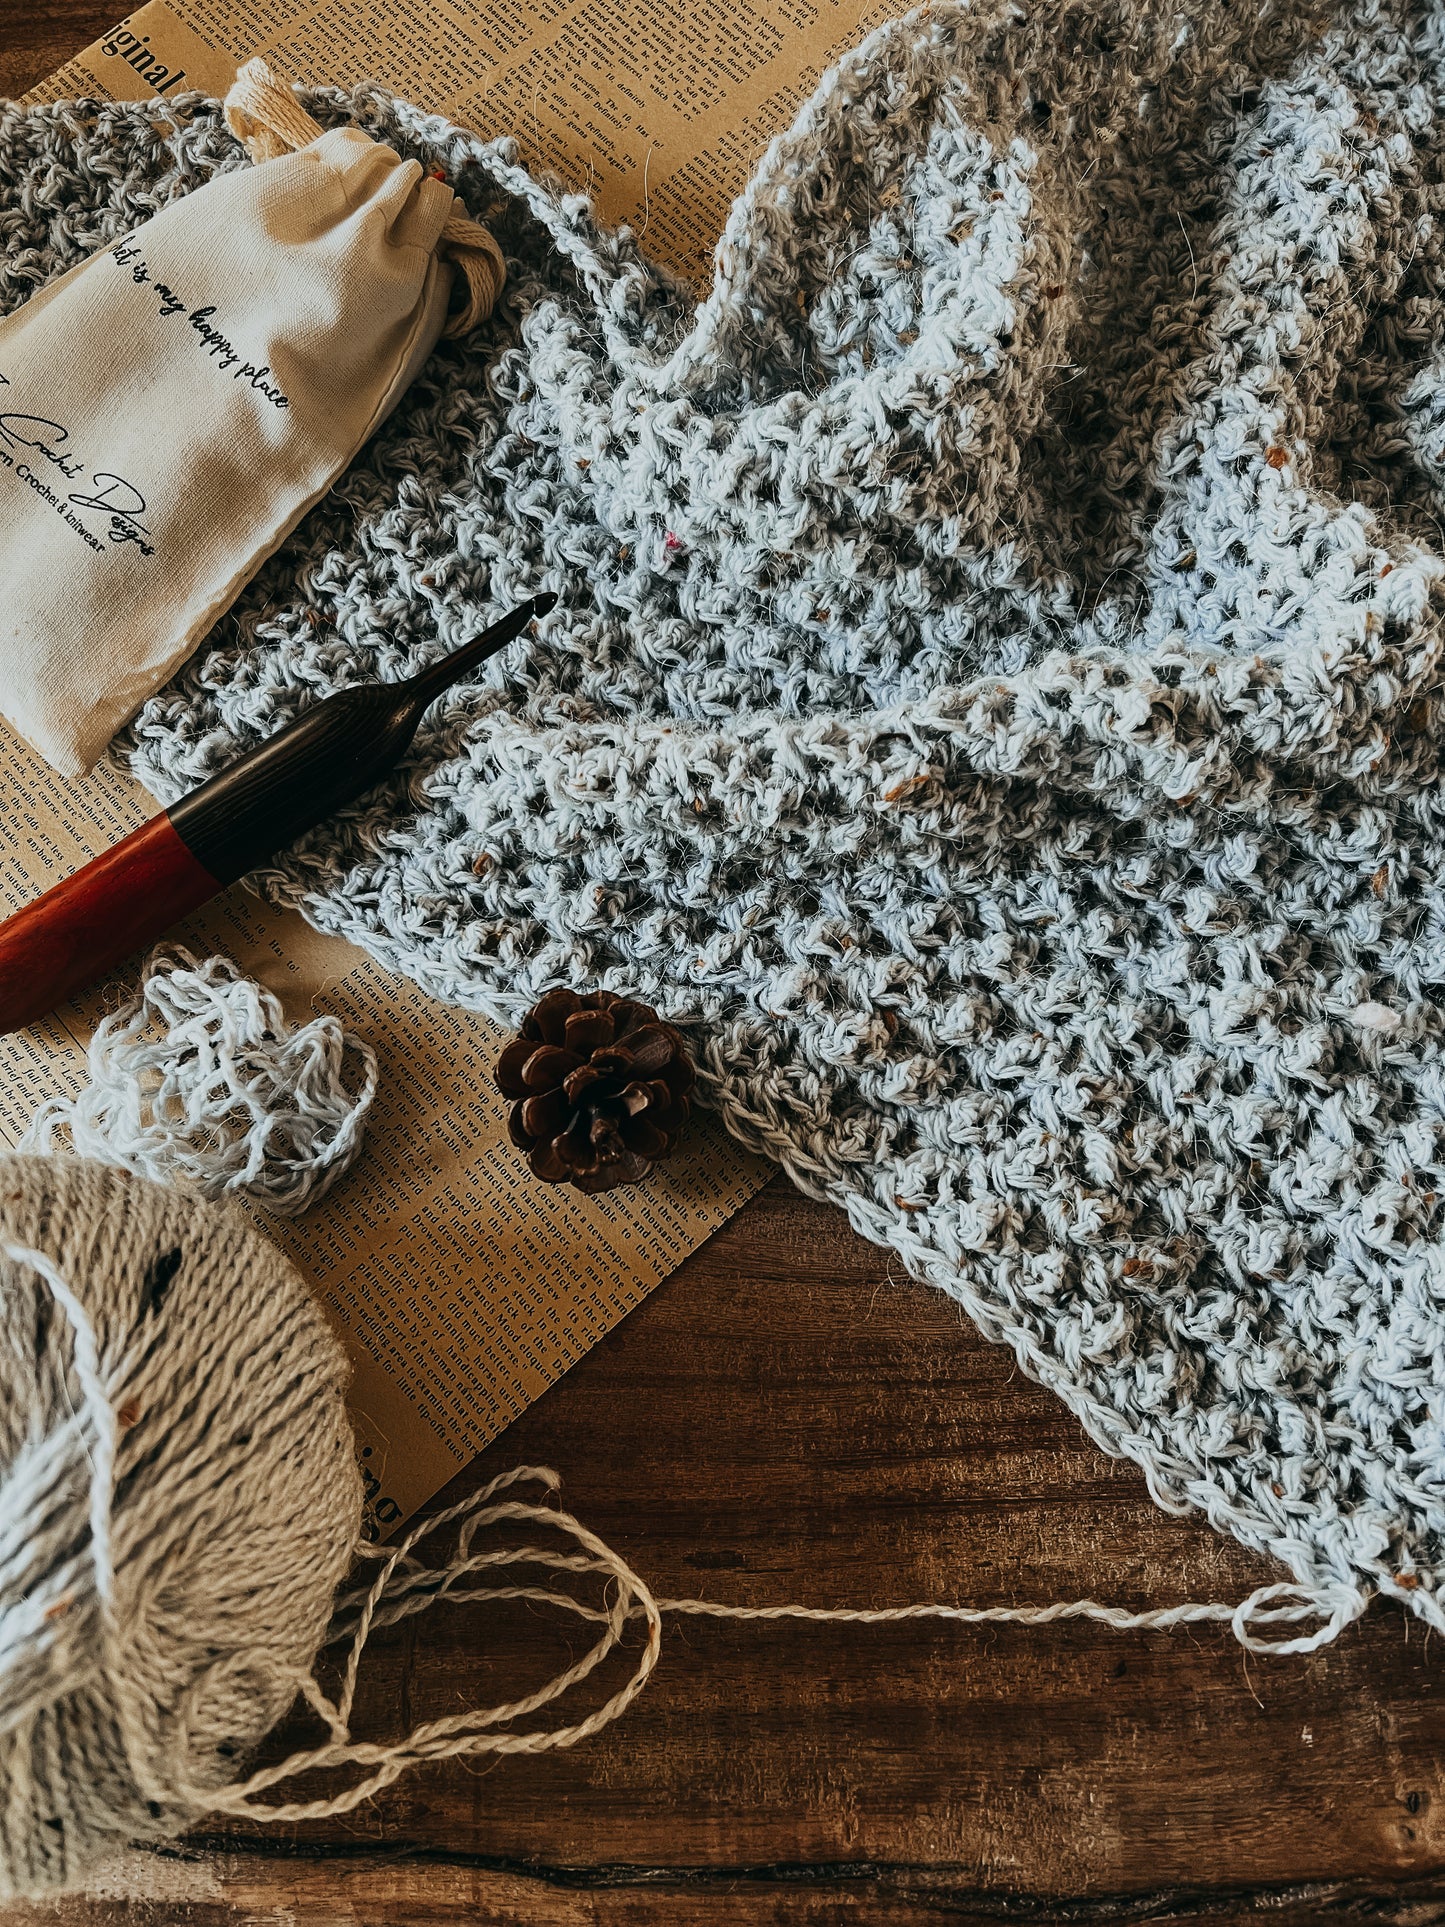 Mini Acorn Shawl Crochet Pattern